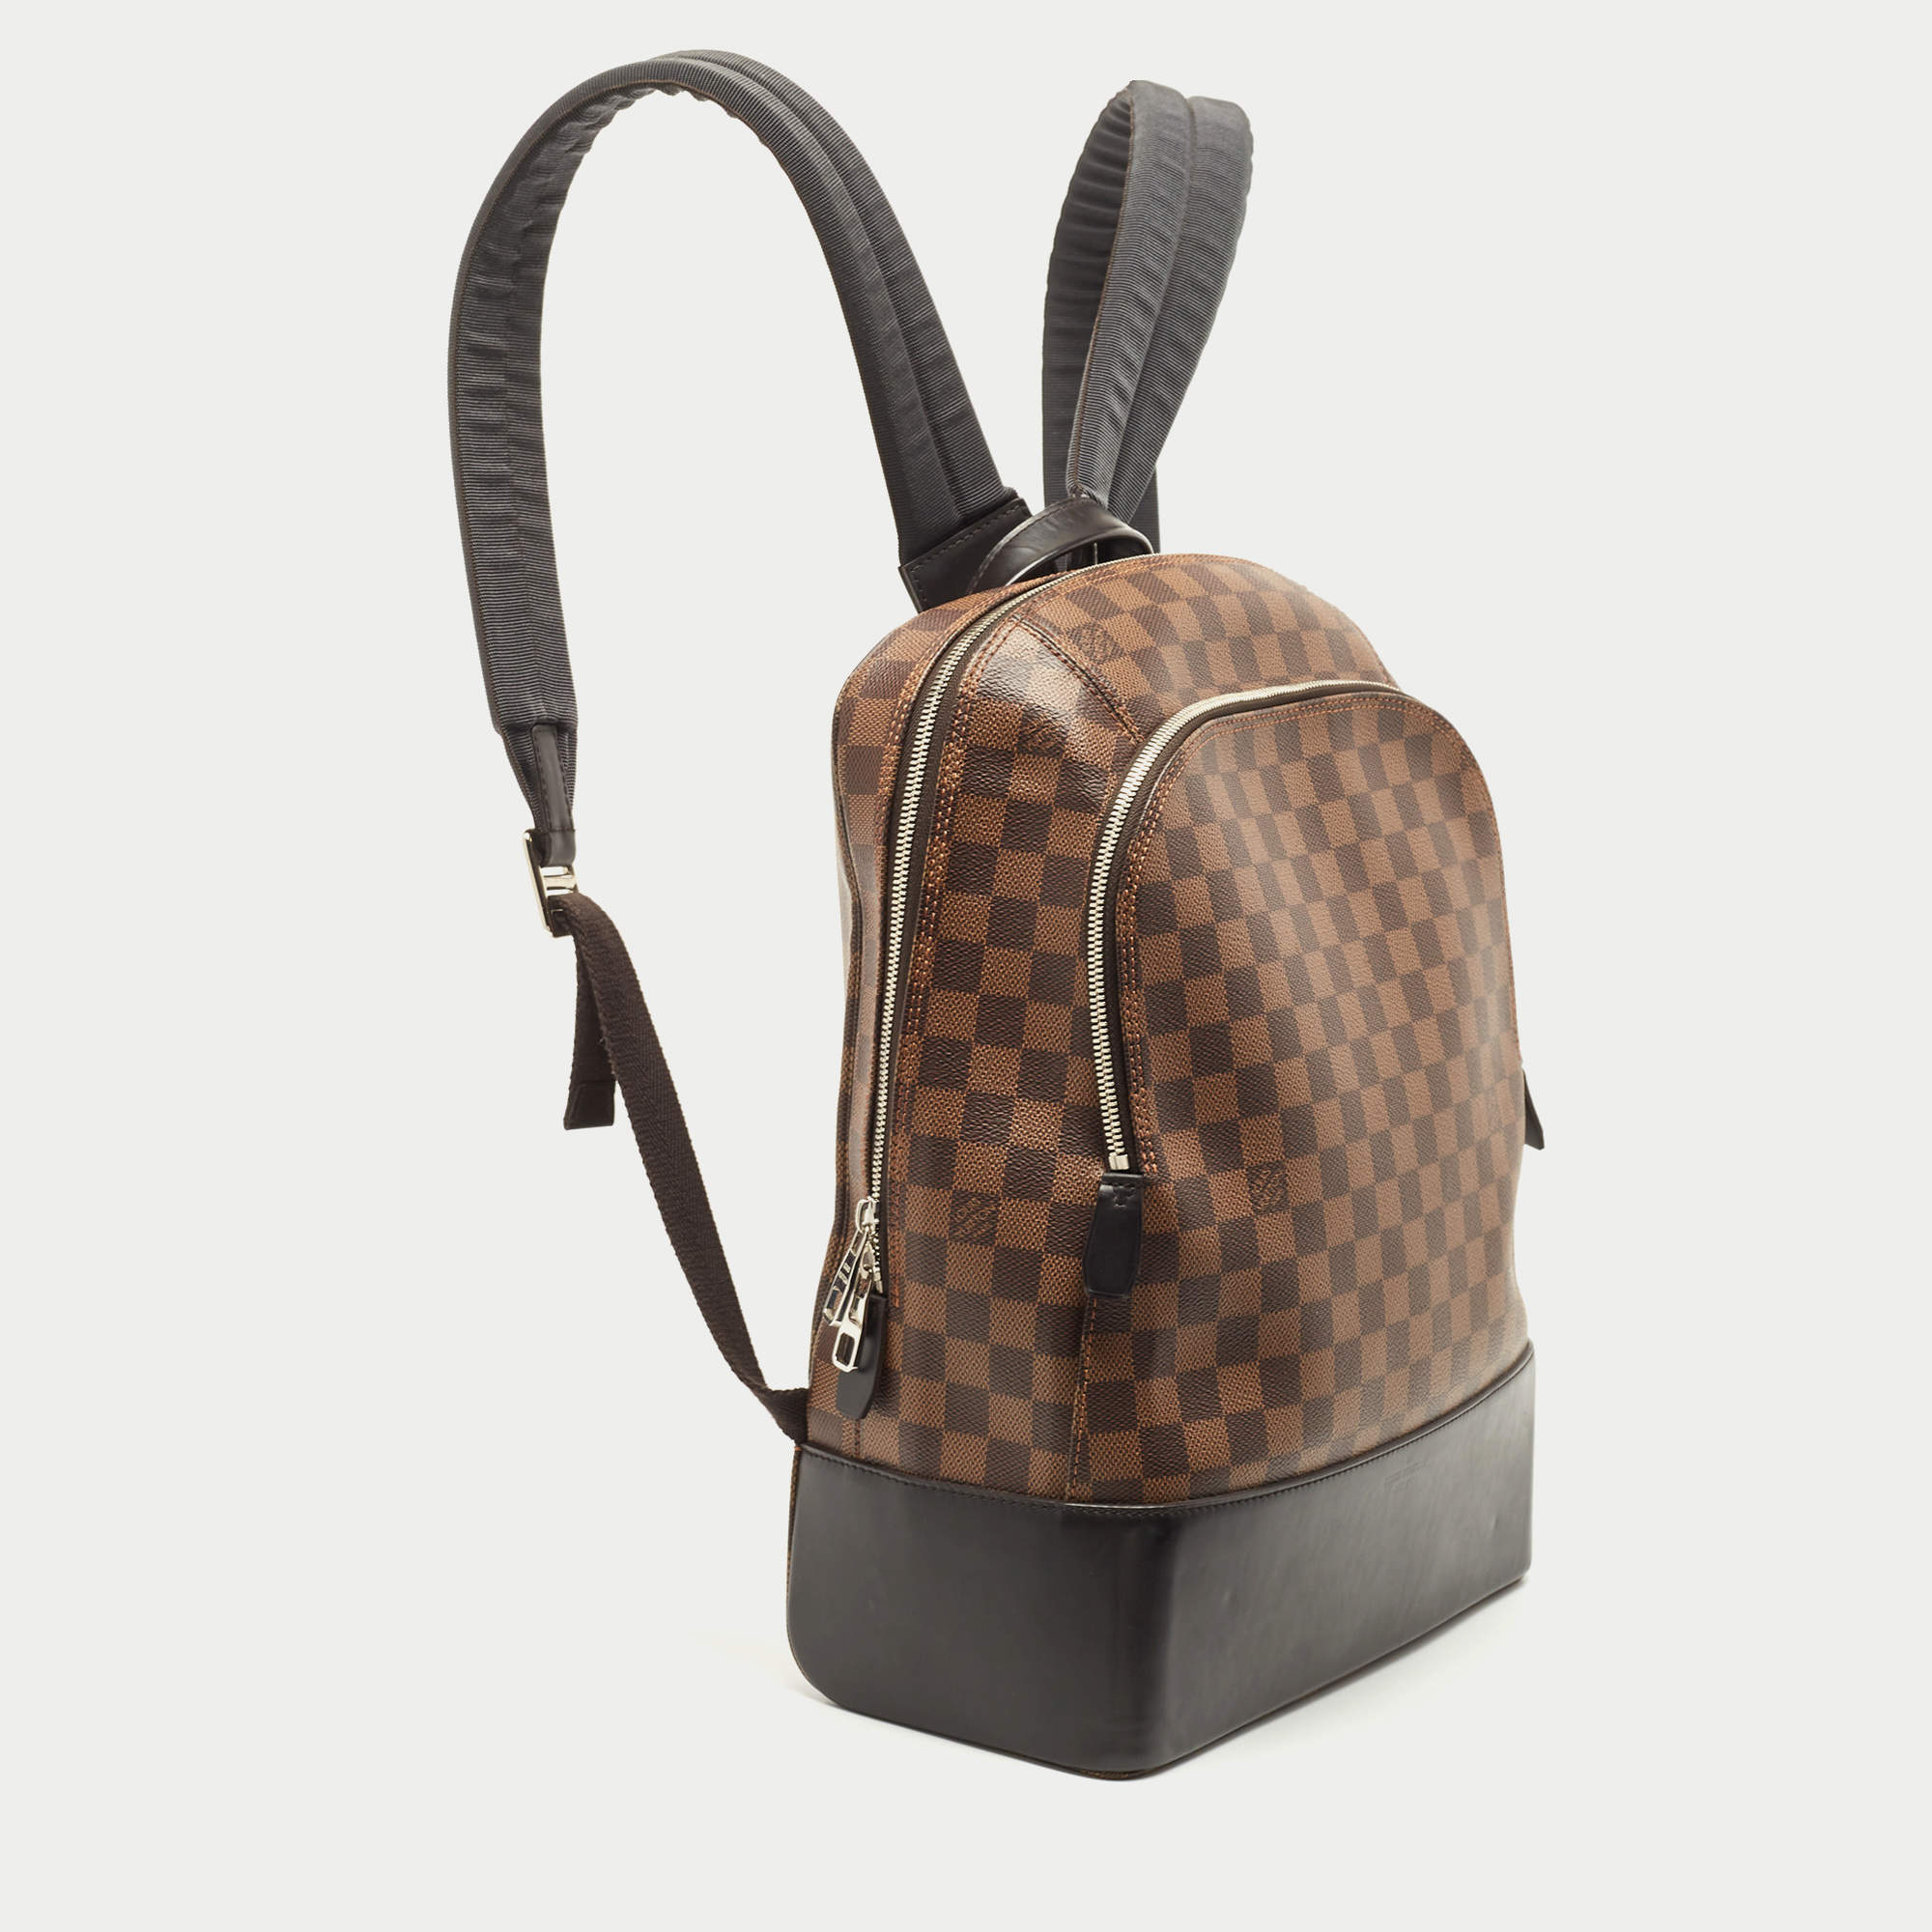 ขายแล้วค่ะ Louis Vuitton Damier Jake Backpack สภาพใช้งานปกติ